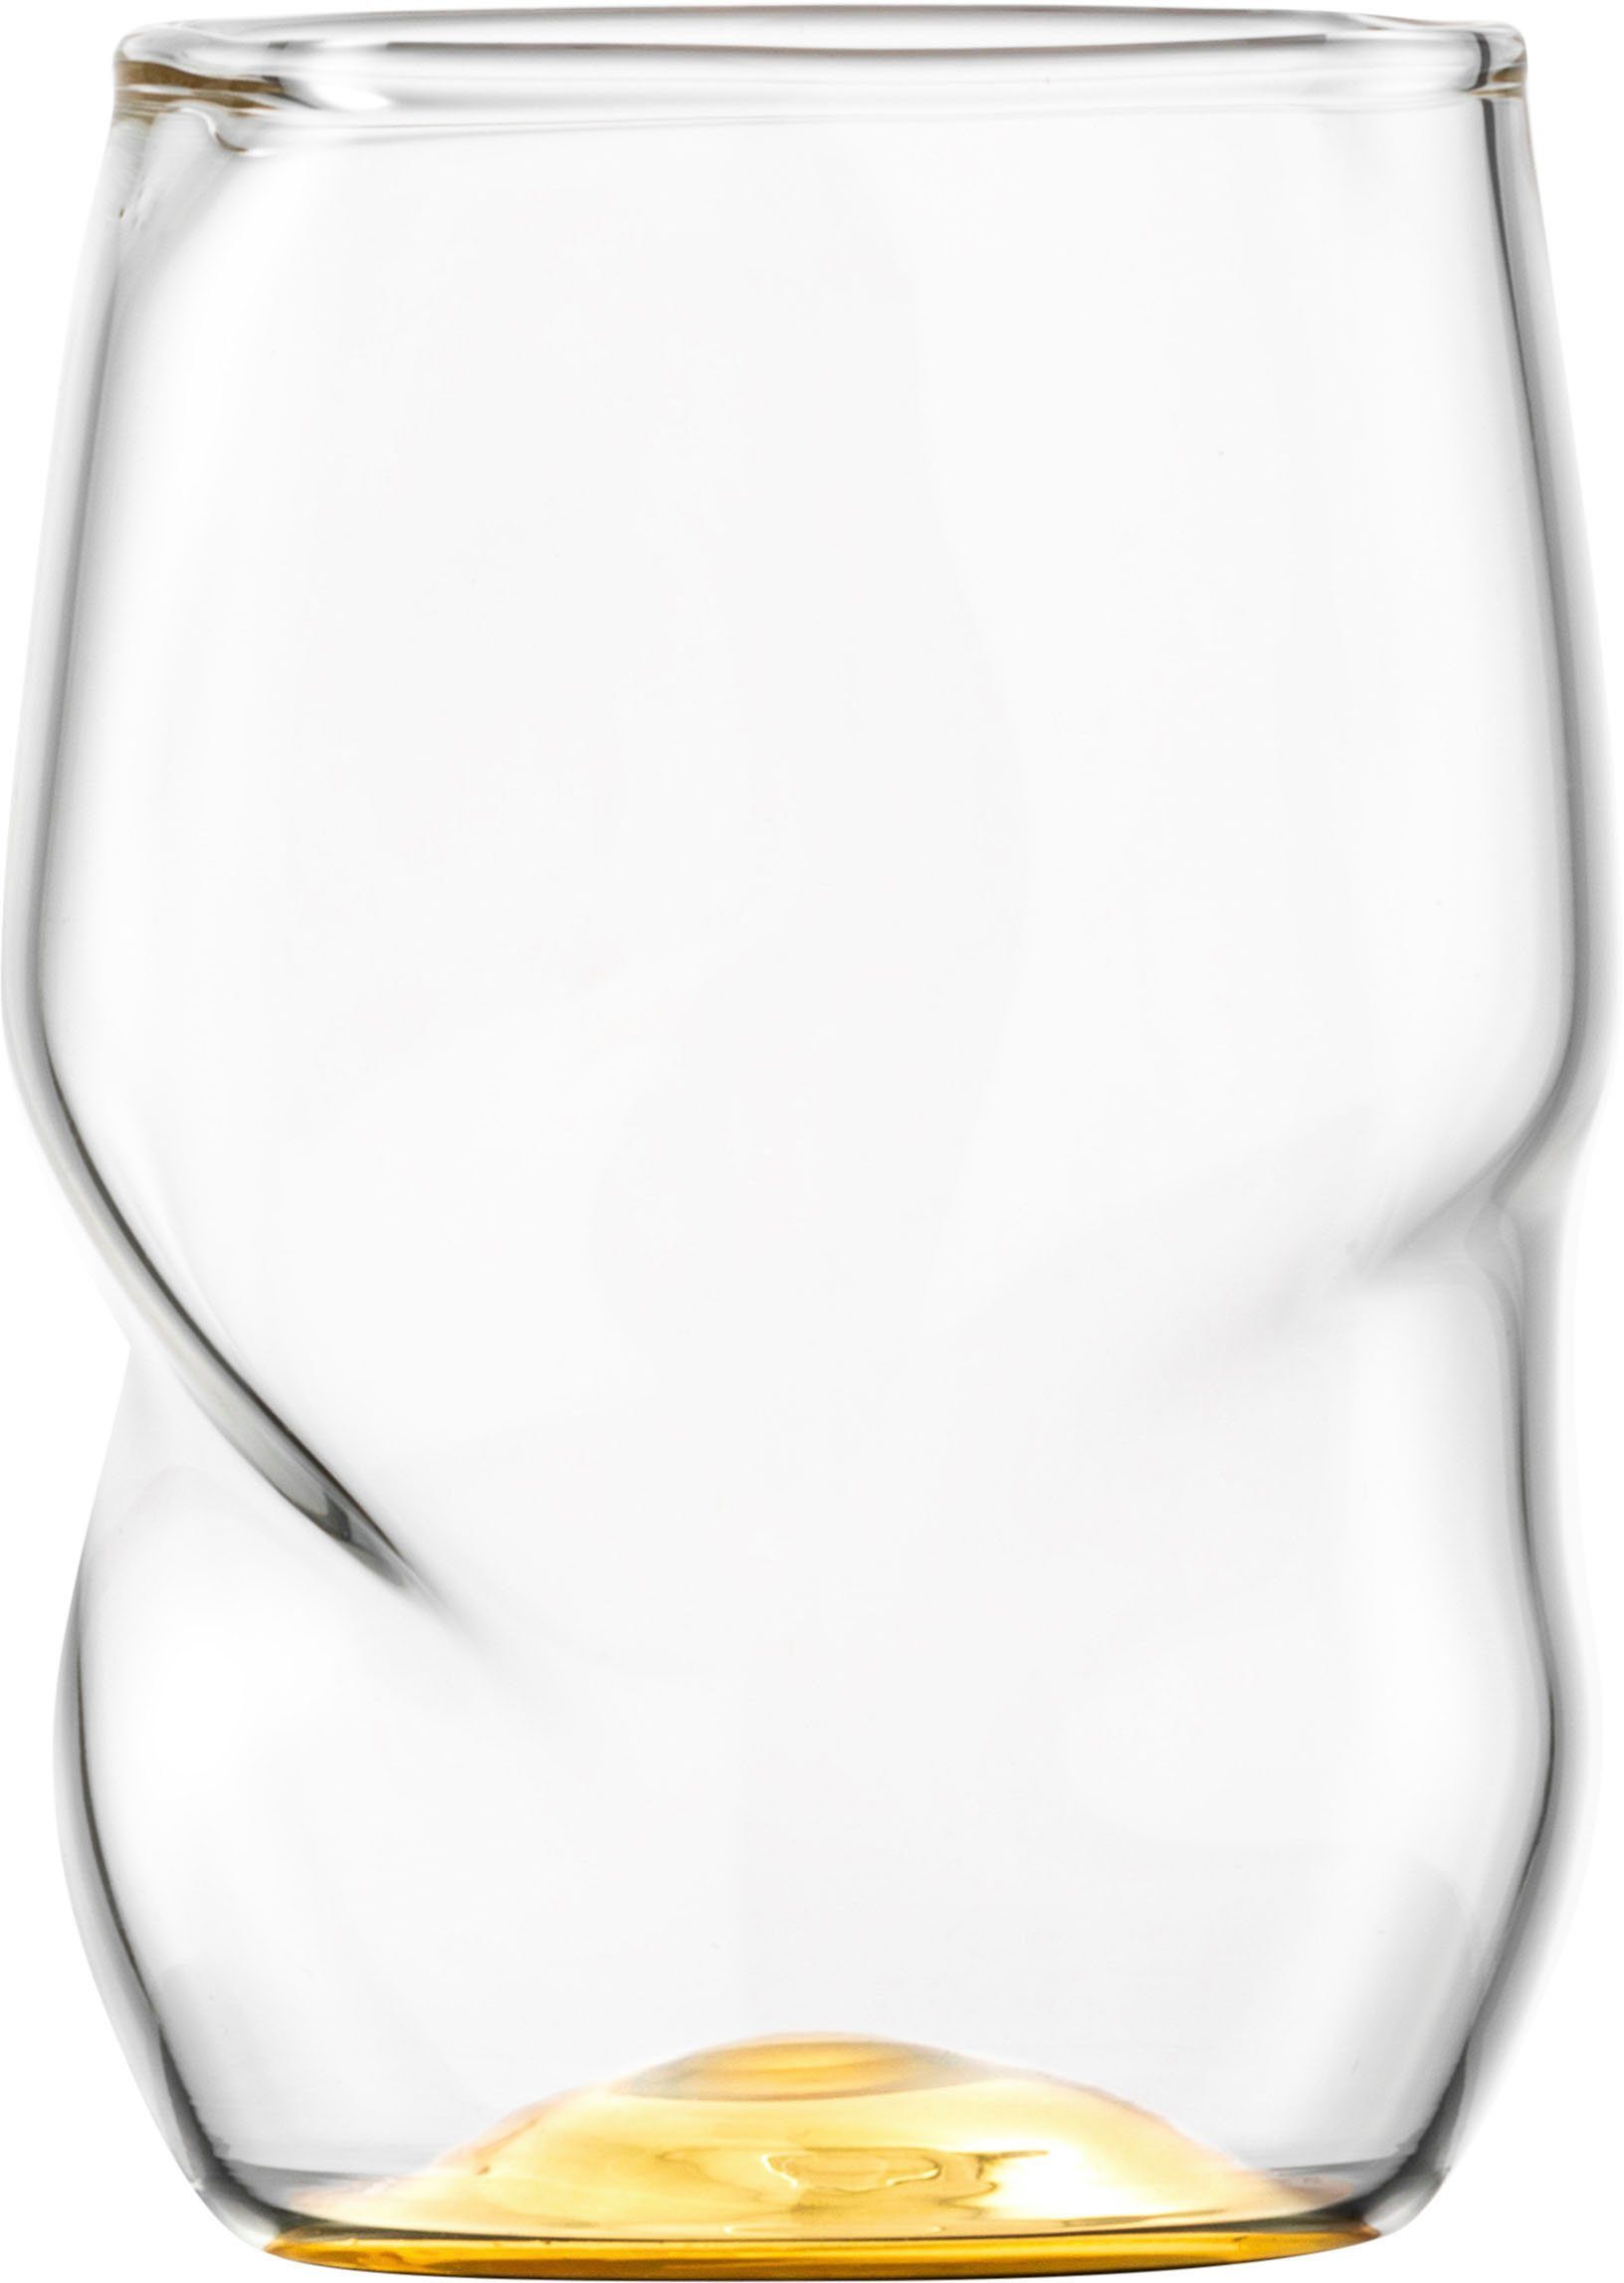 Eisch Becher UNIK, Borosilikatglas, Allroundbecher, veredelt mit Echtgold,  2-teilig, 300 ml, Bei einer Höhe von 10cm beträgt das Volumen des Glases  ca. 300ml. | Kaffeebecher